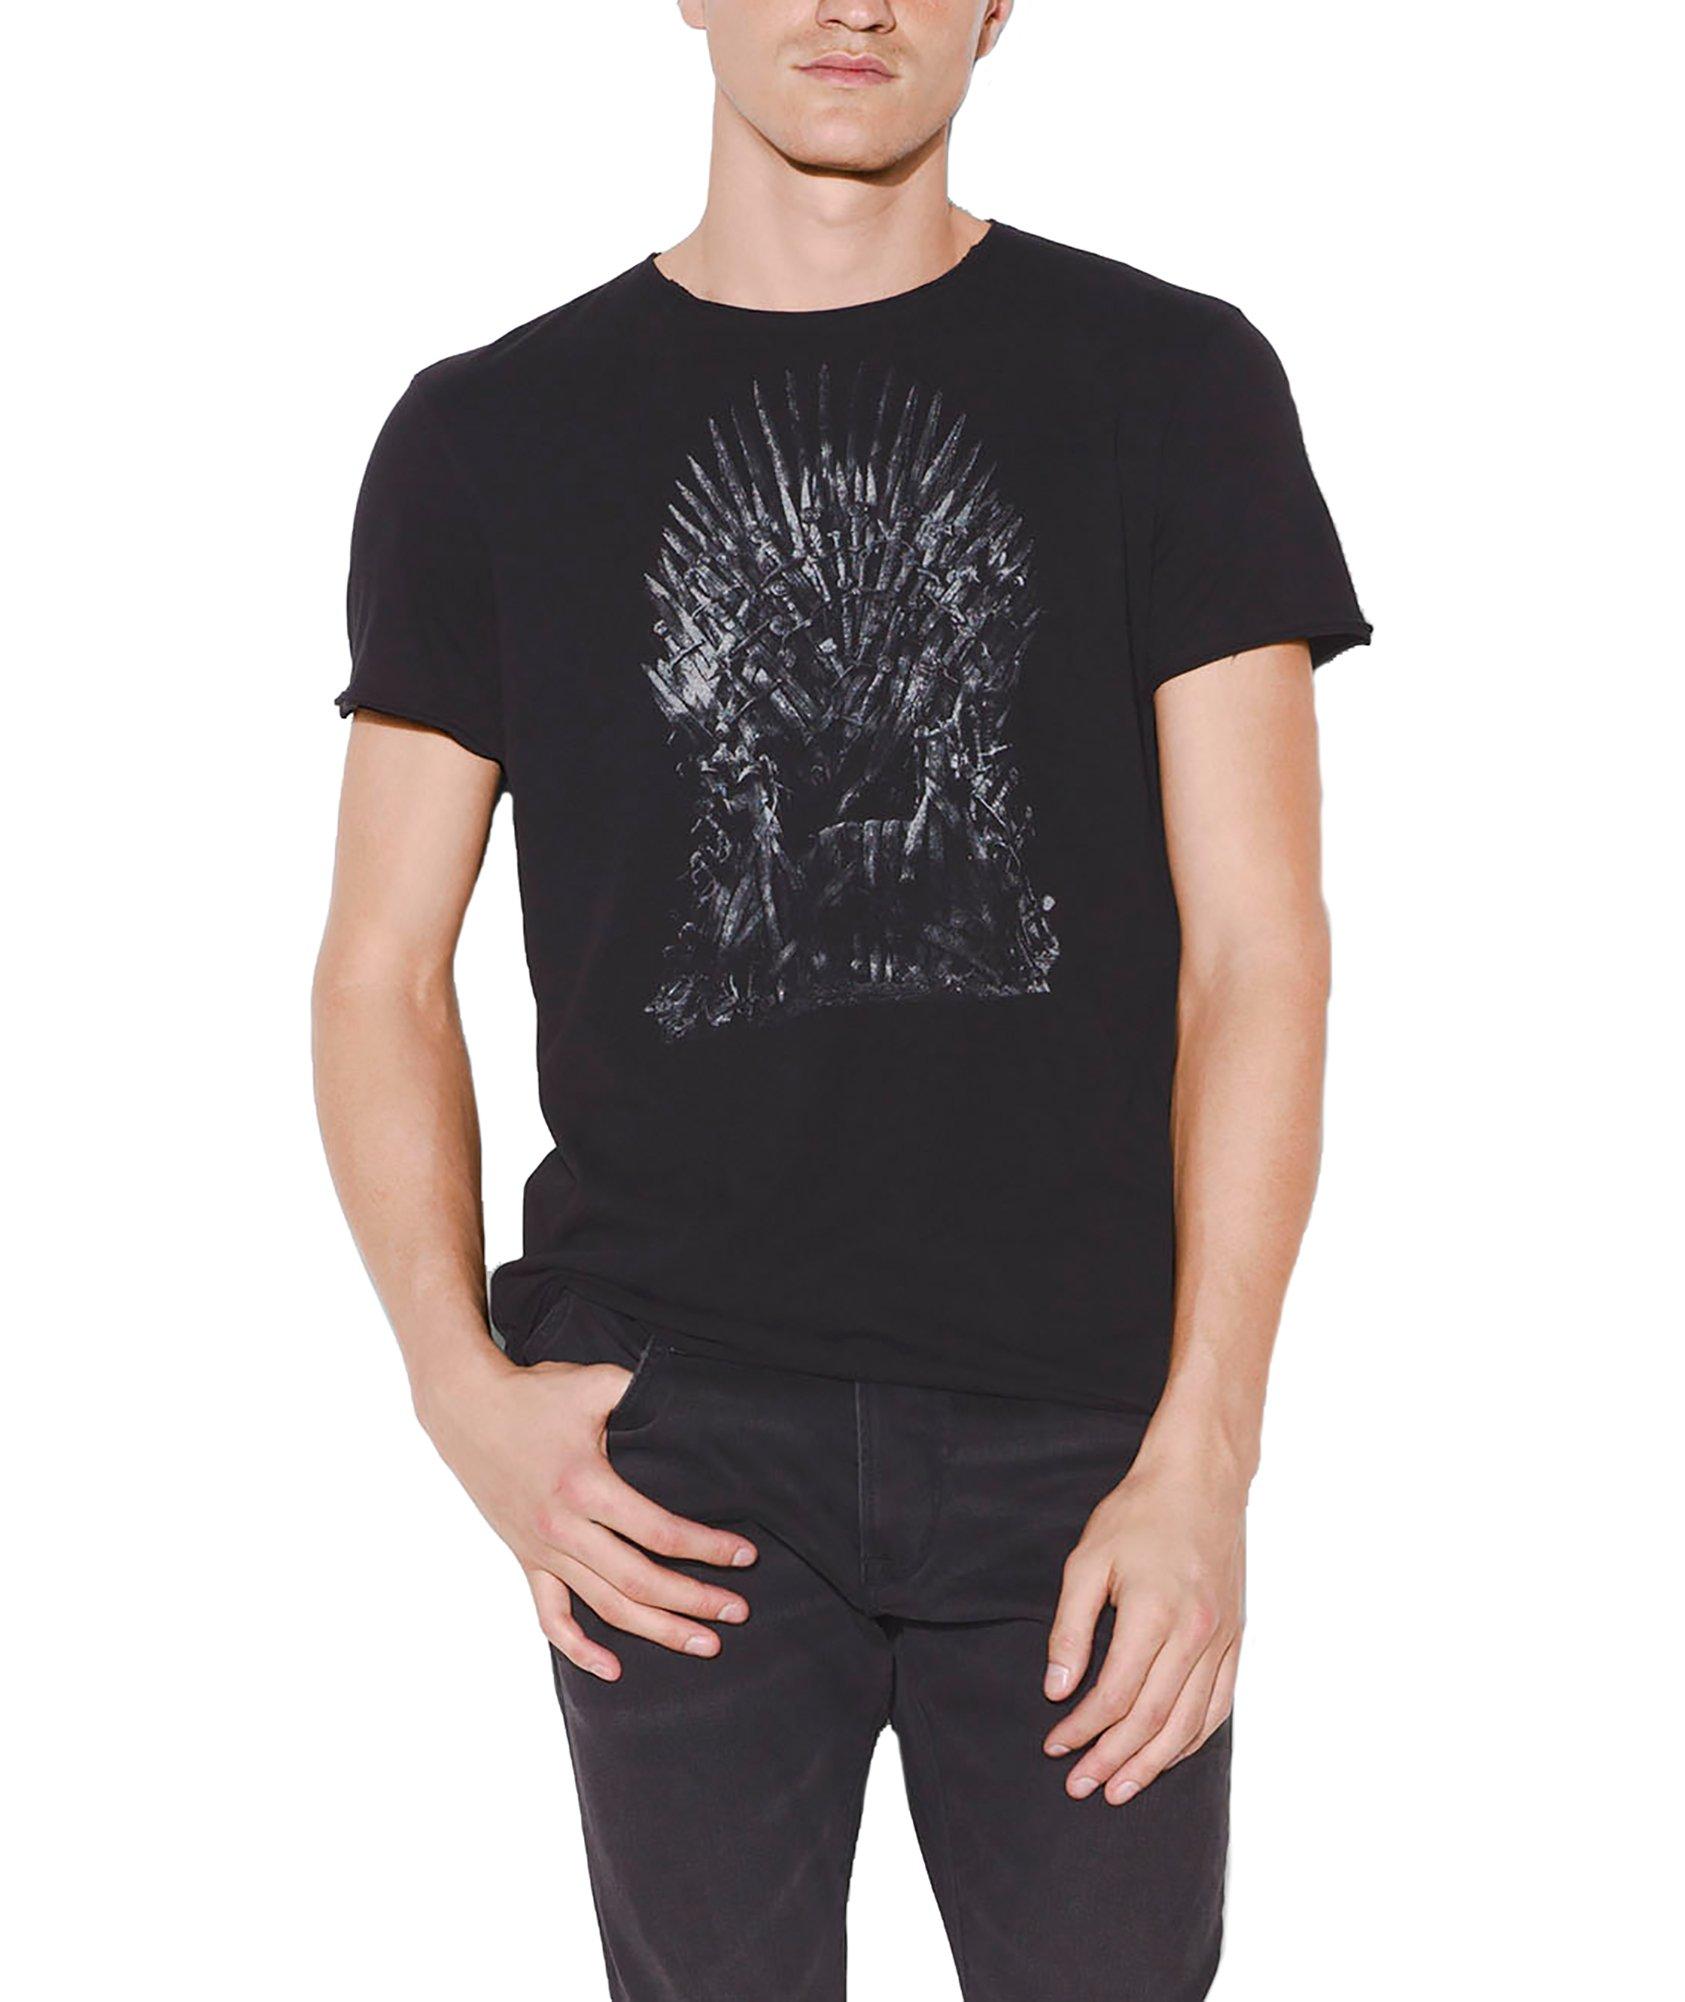 T-shirt de Game of Thrones image 0